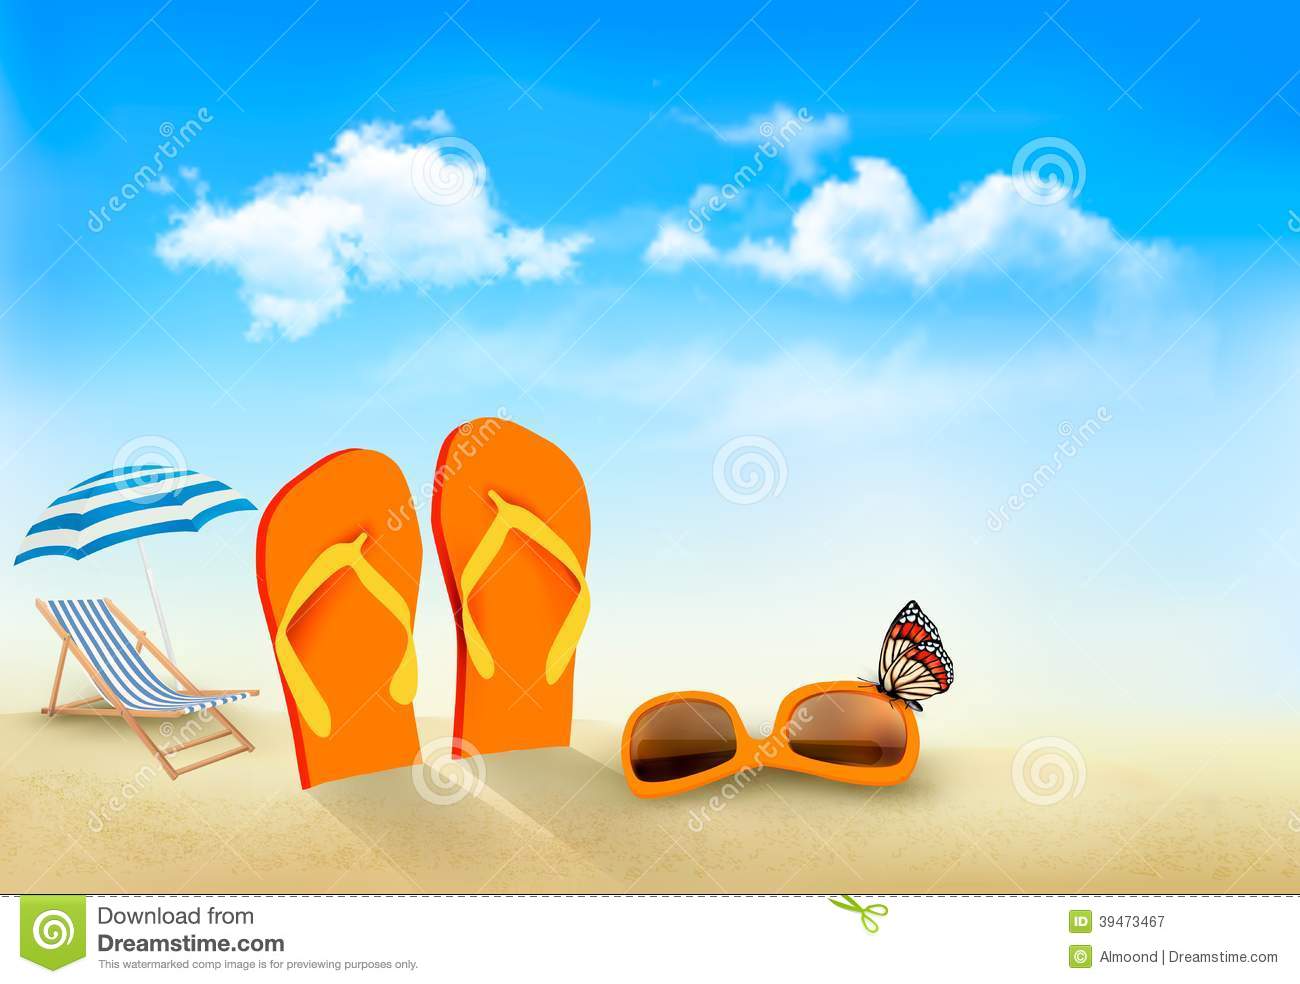 Flip Flops Sunglasses Beach Chair And A Butterfly On A Beach  Summer